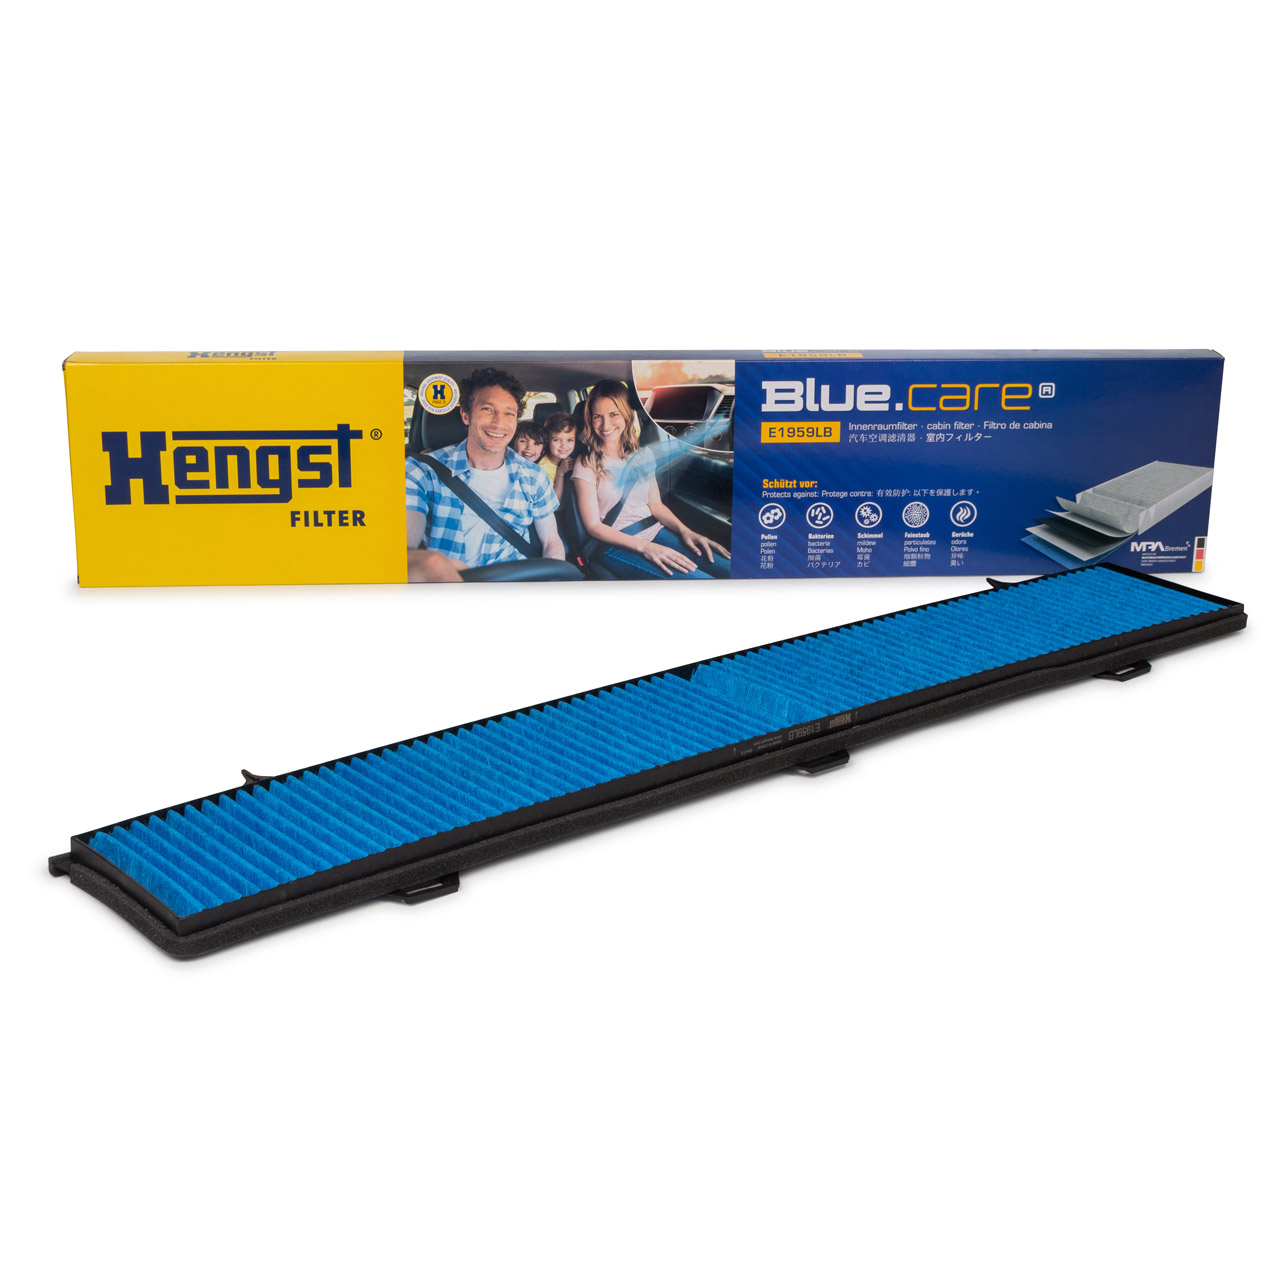 HENGST E1959LB BLUE CARE Innenraumfilter ANTIBAKTERIELL für BMW E81-88 E90-93 X1